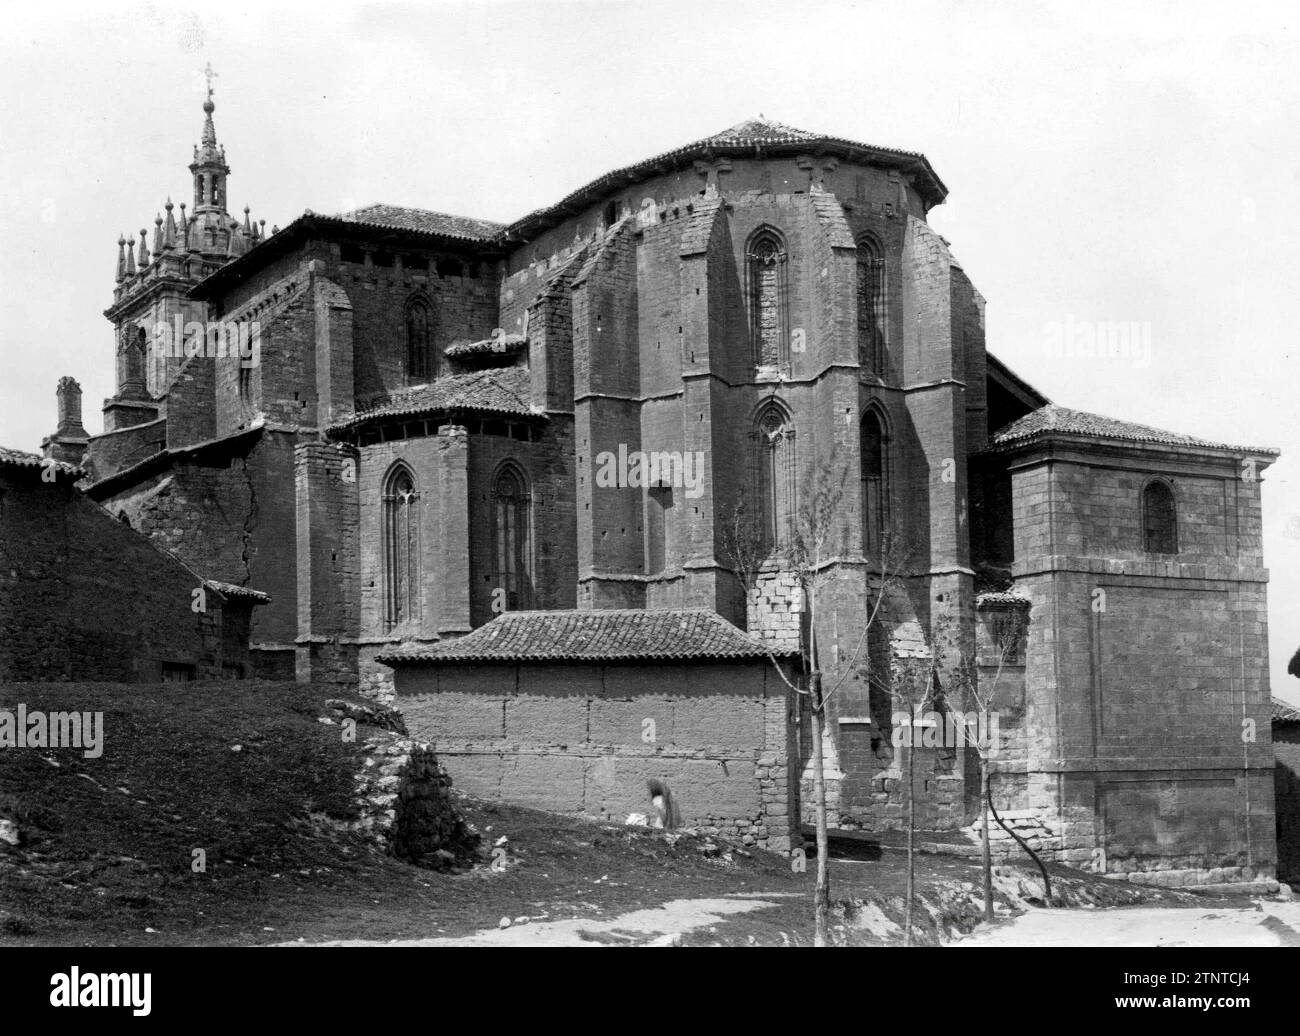 12/31/1952. Tamara Church from the 14th century, in Palencia. Credit: Album / Archivo ABC / Albino R. Alonso Stock Photo